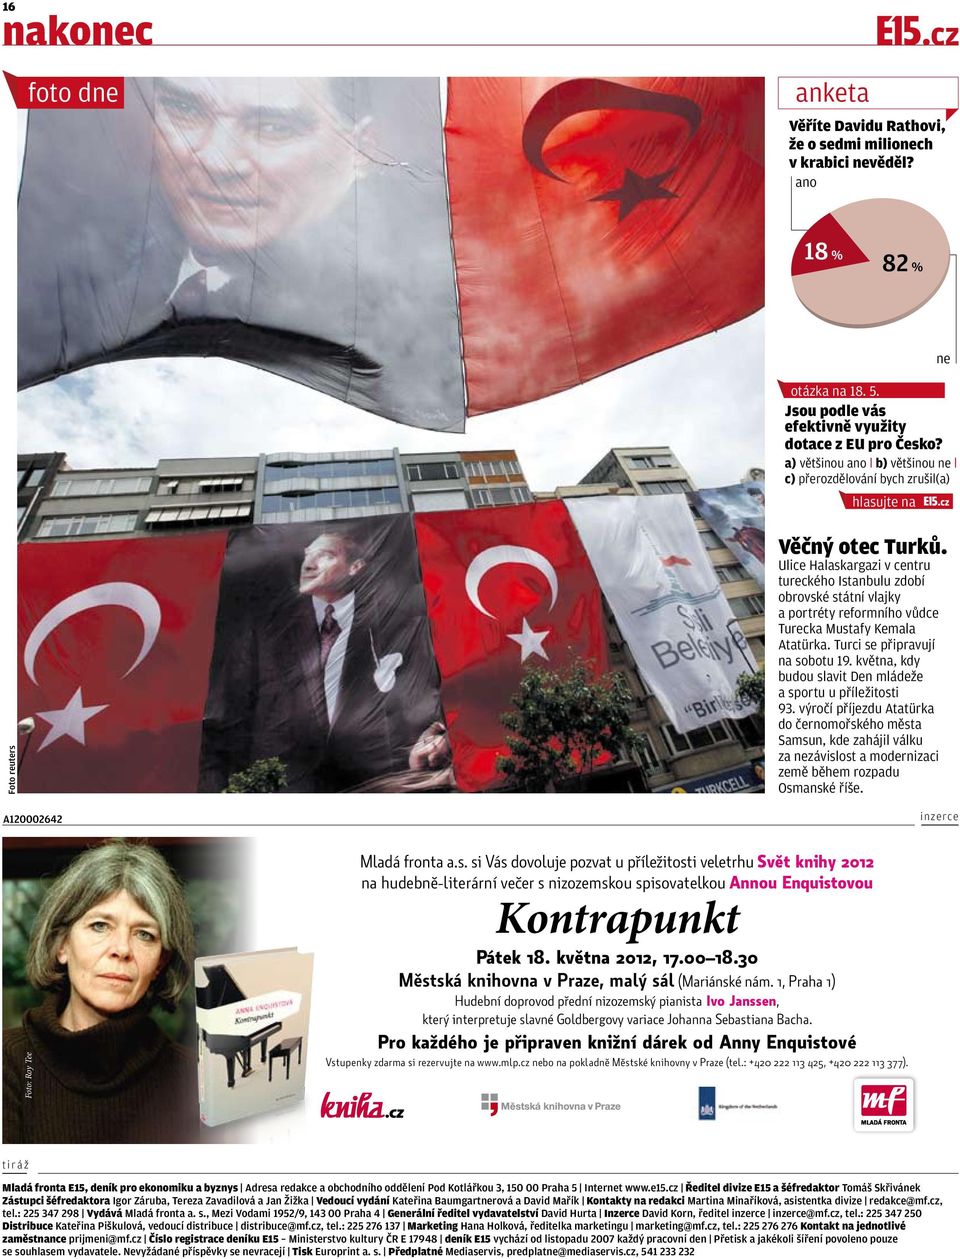 Ulice Halaskargazi v centru tureckého Istanbulu zdobí obrovské státní vlajky a portréty reformního vůdce Turecka Mustafy Kemala Atatürka. Turci se připravují na sobotu 19.